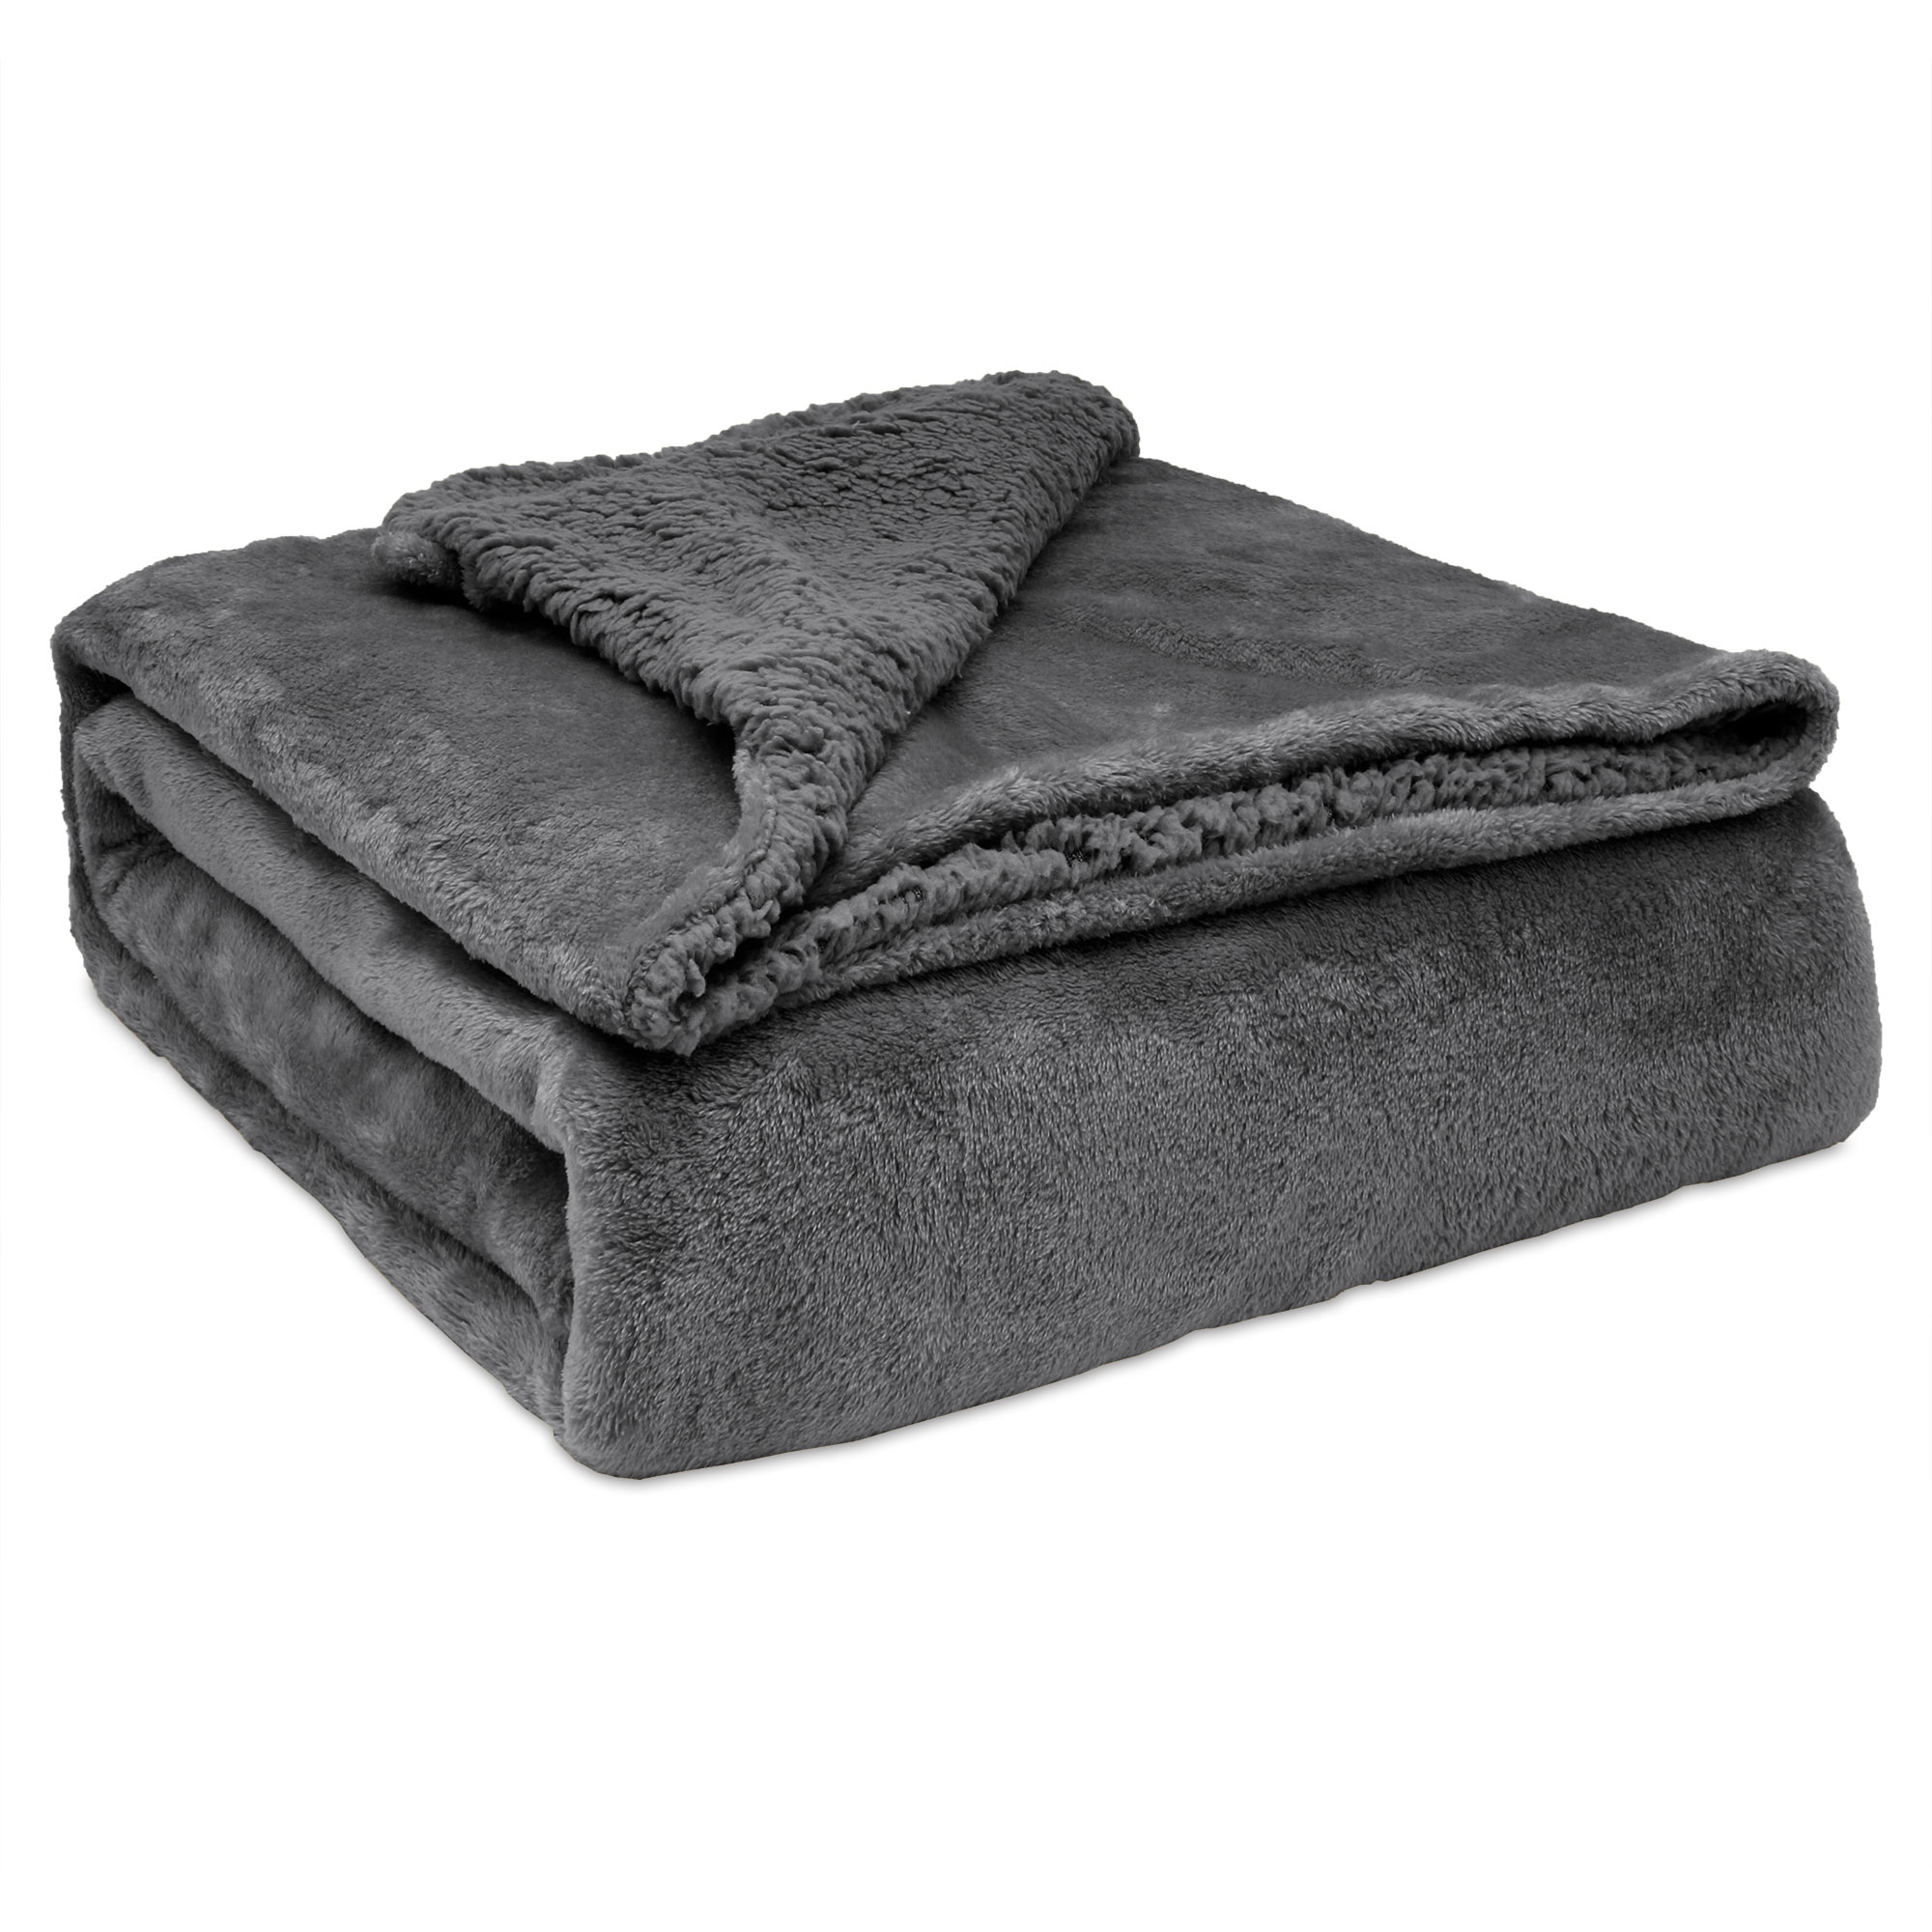 Double couverture épaisse hiver couverture chaude tapis couverture  couverture sieste couverture mode couette